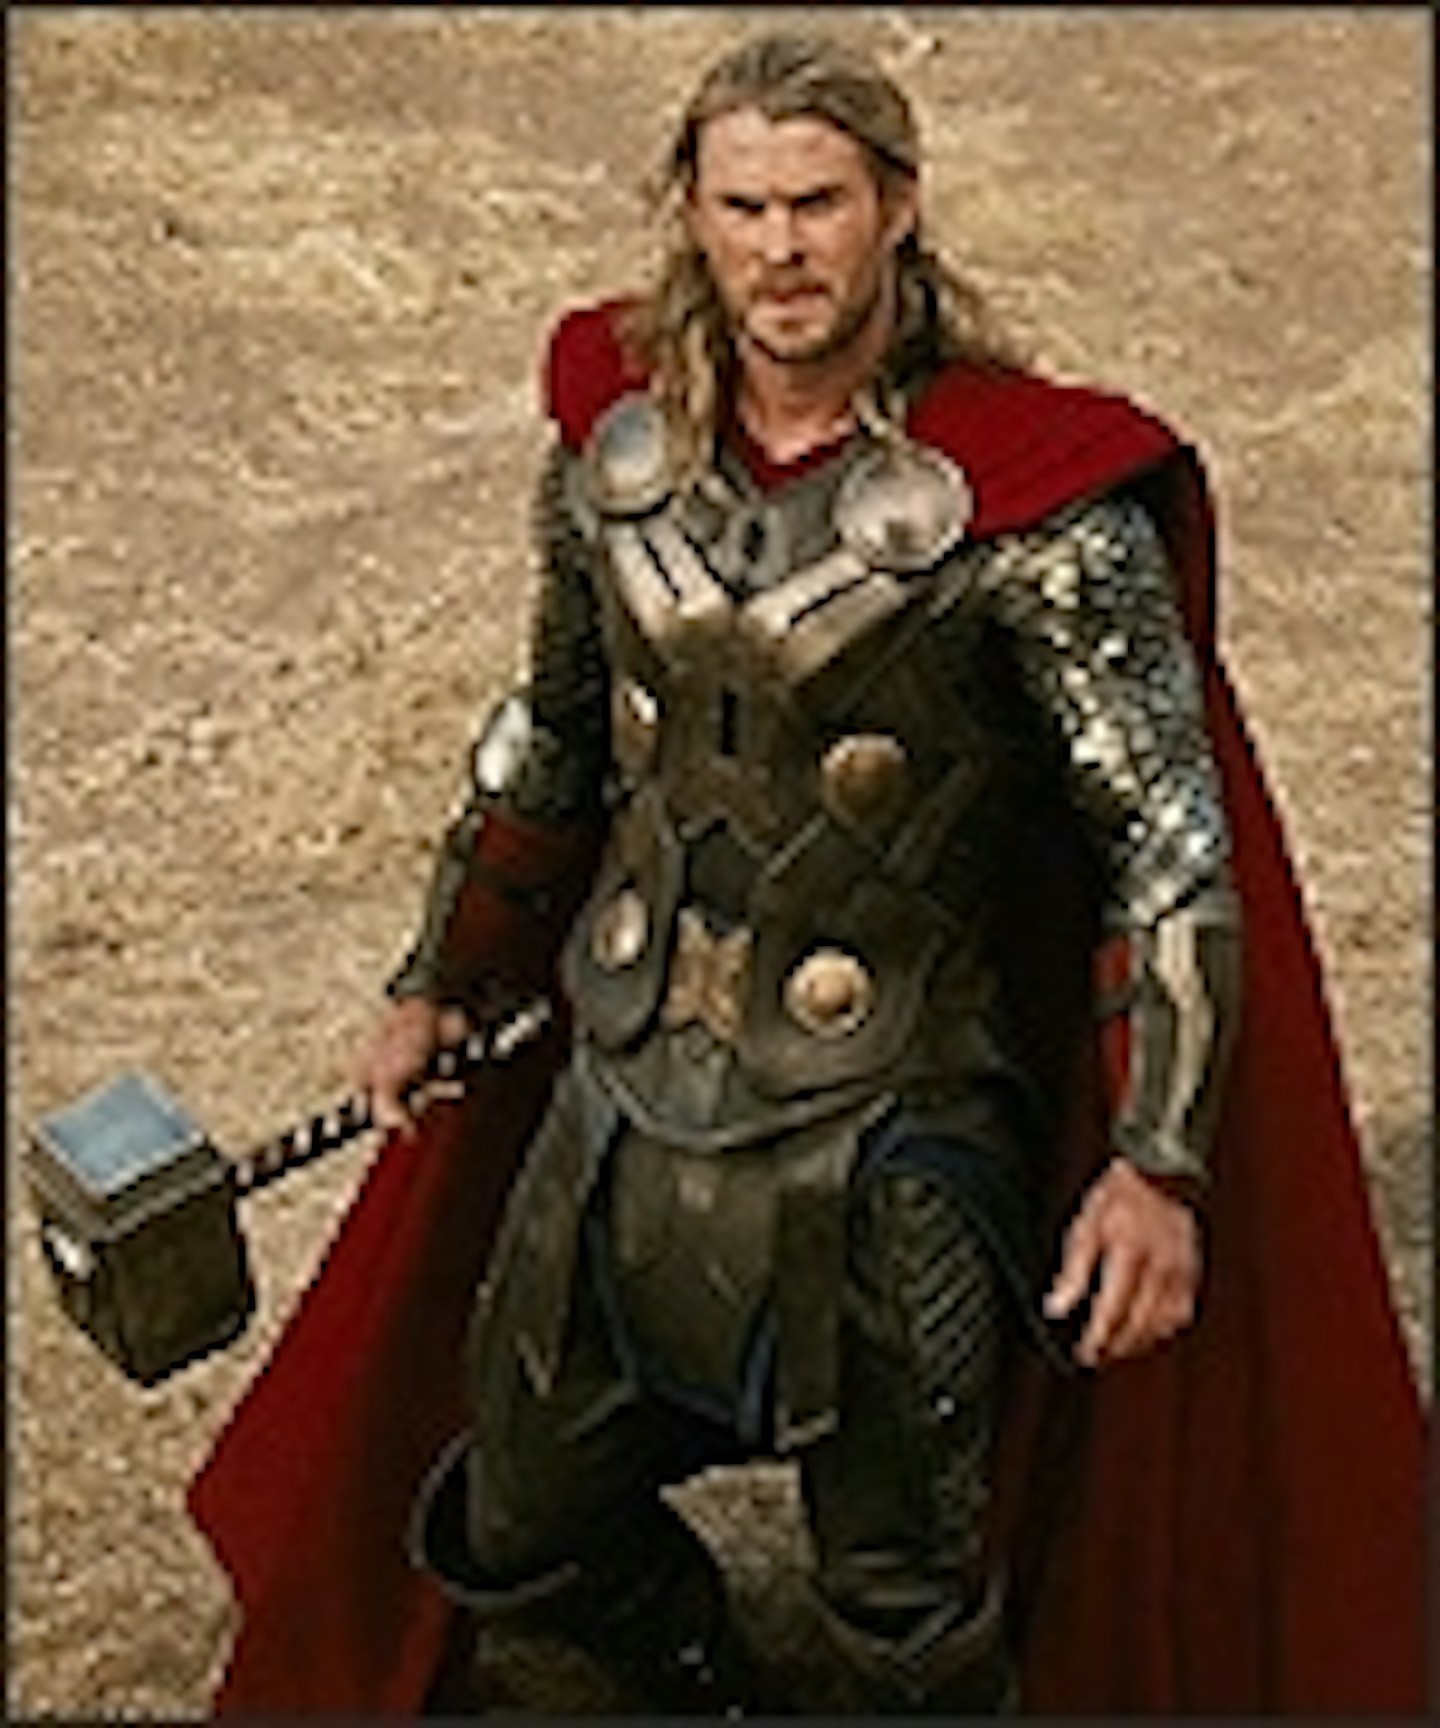 Full-Length Thor: The Dark World Trailer Online